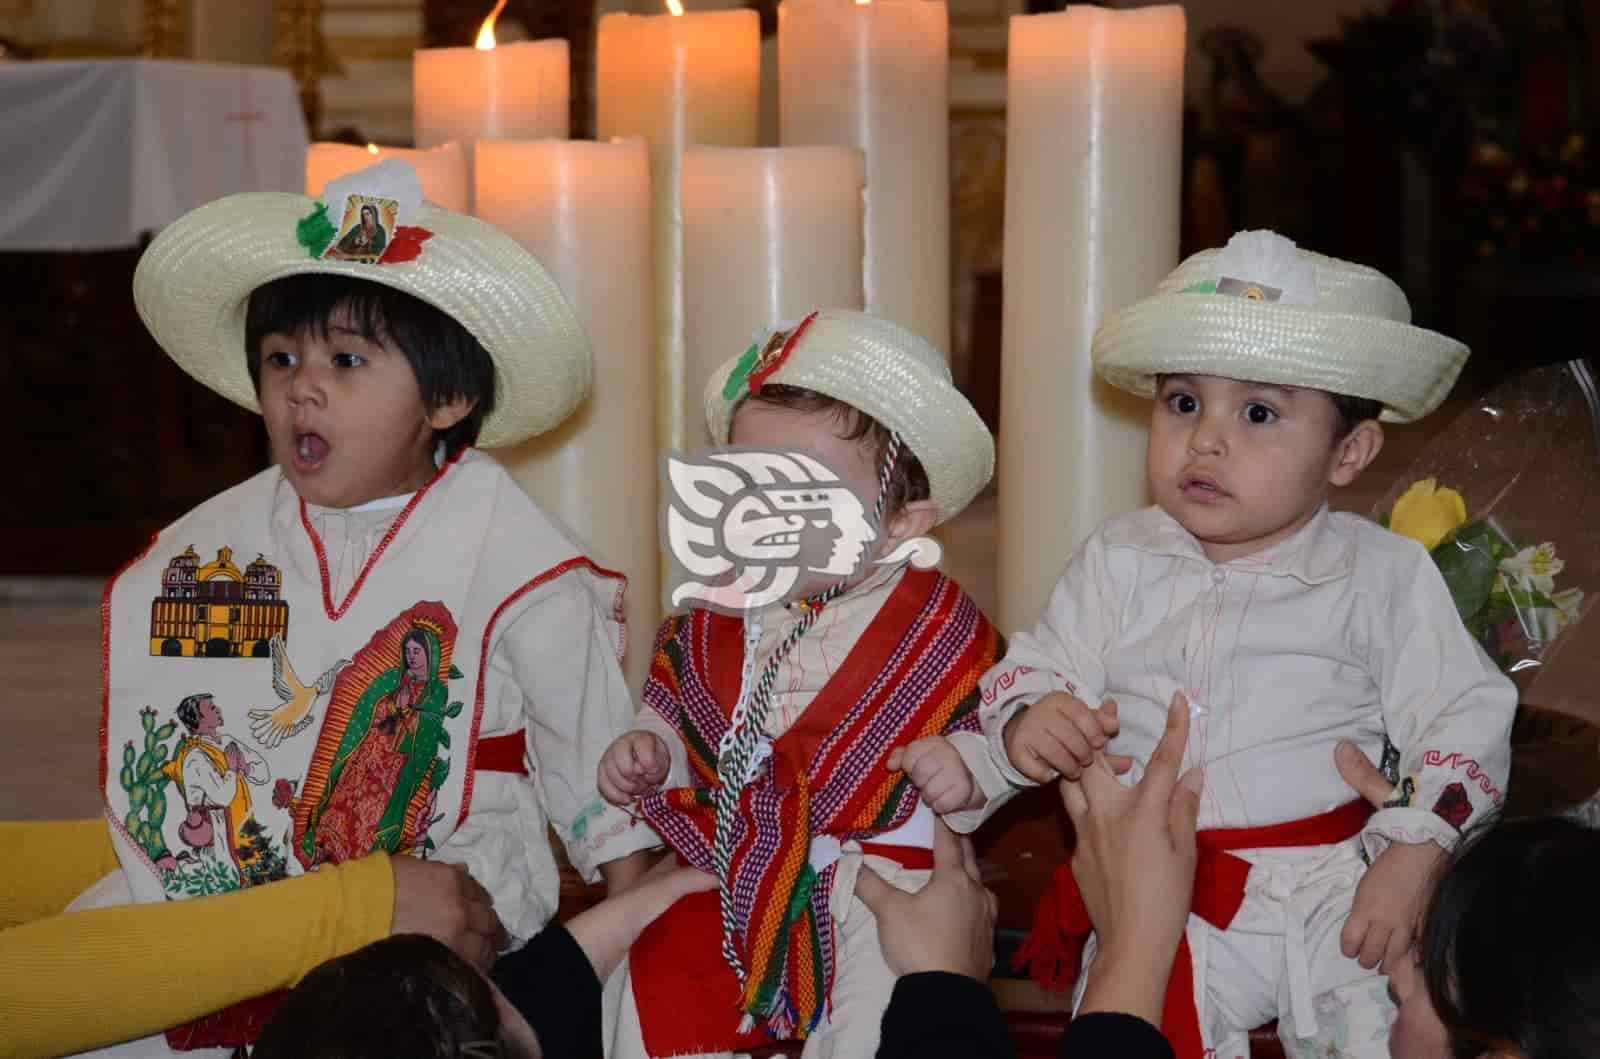 Habrá bendición de niños “inditos” cada media hora en Catedral de Veracruz